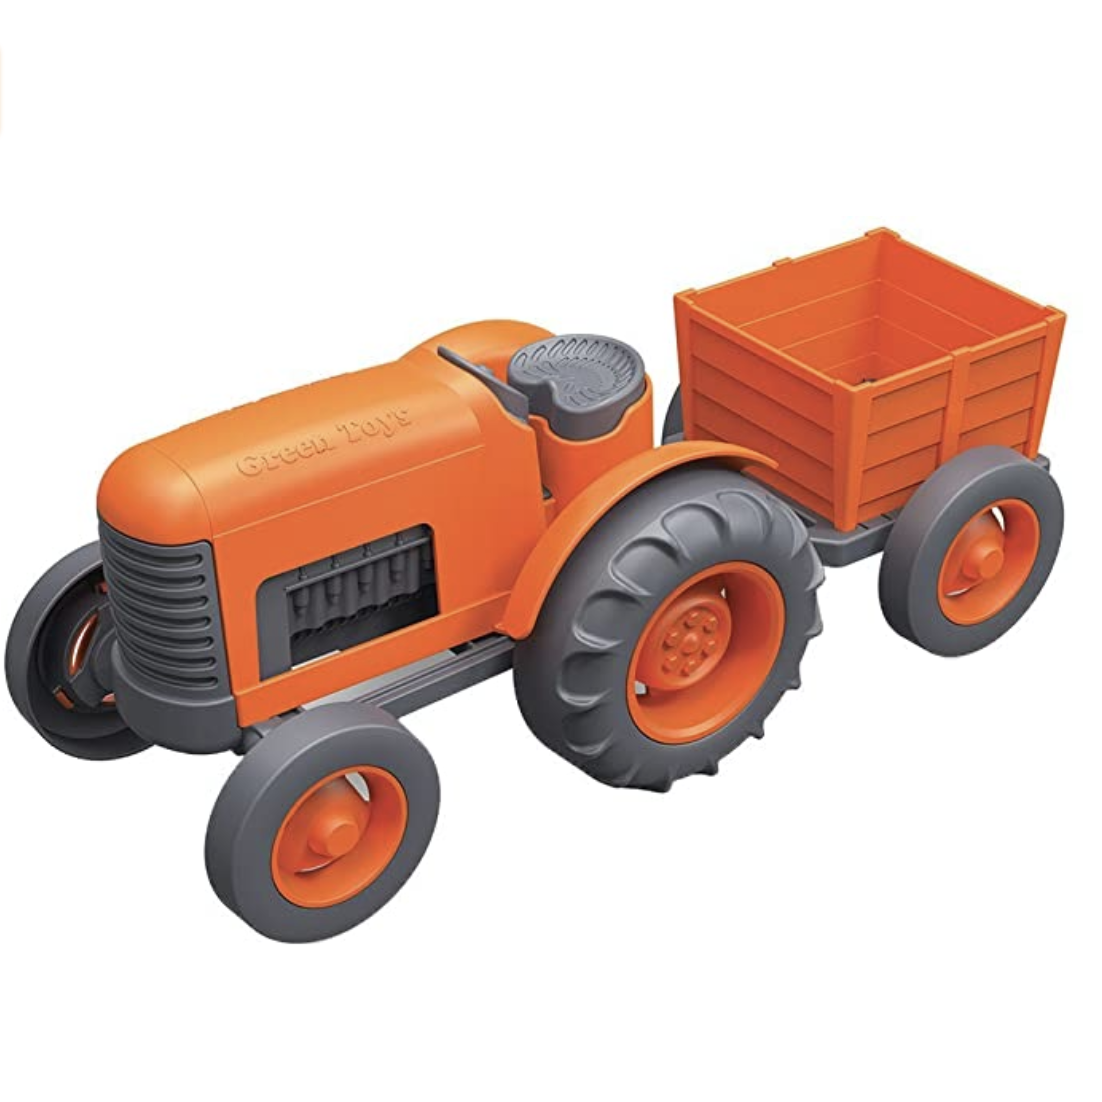 Amazon.com: Green Toys Tractor Vehicle, Orange : Everything Else